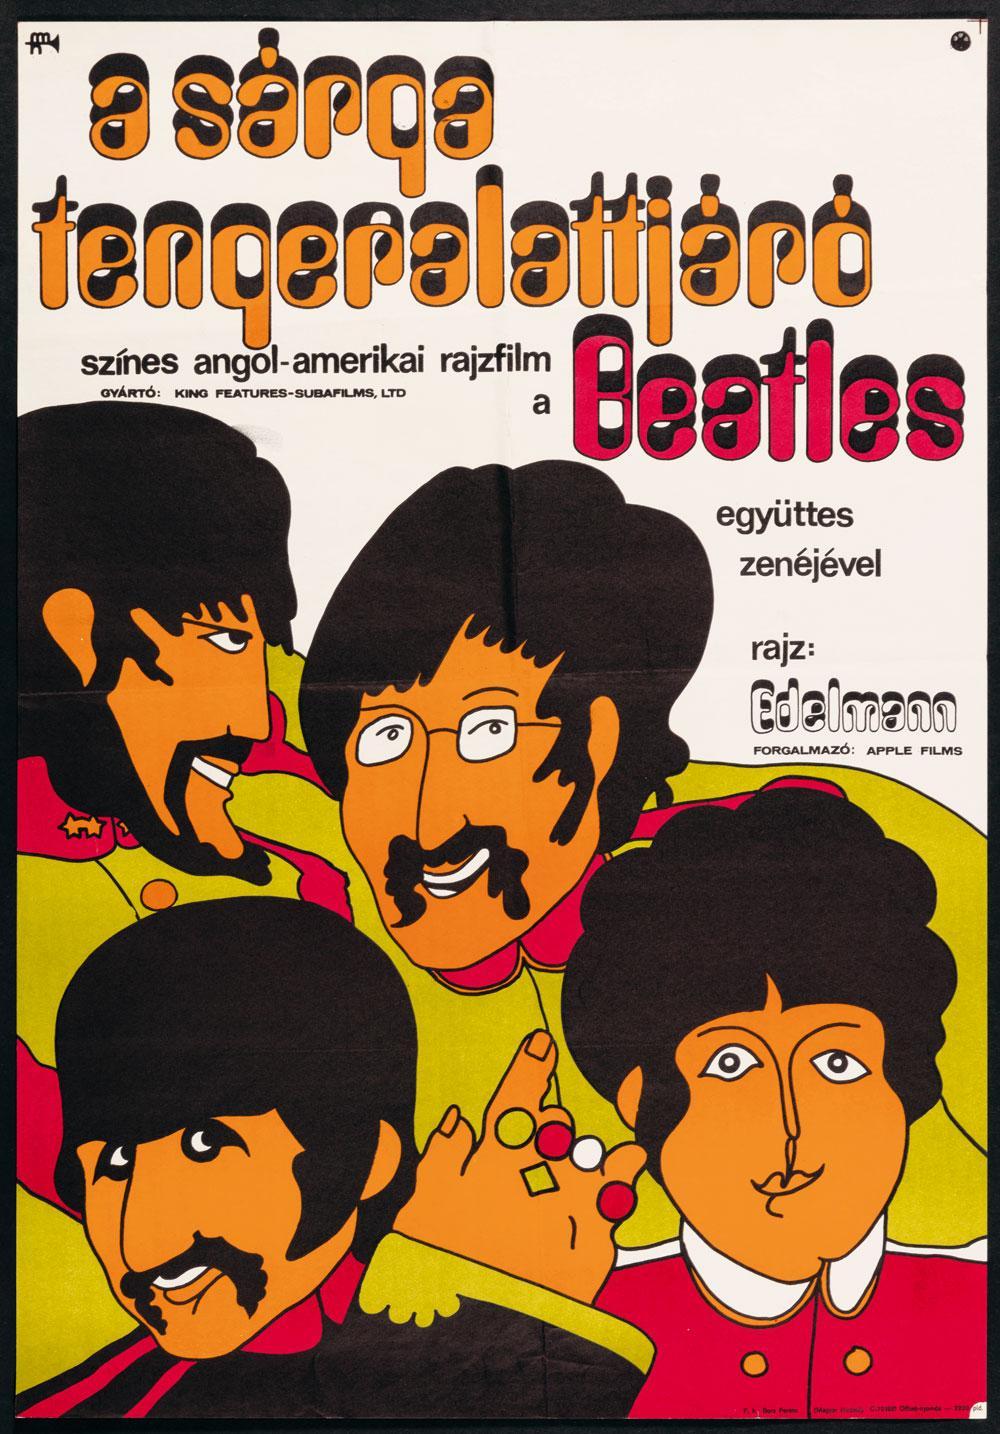 Portée par l'idéologie communiste qui en faisait le coeur de son projet révolutionnaire, la jeunesse d'Europe de l'Est n'est jamais restée insensible pour autant à la nouvelle donne pop, pratiquée à l'Ouest. Perméable, le rideau de fer n'a pas pu retenir la vague Beatles, comme en témoigne ce poster hongrois, daté de 1969.